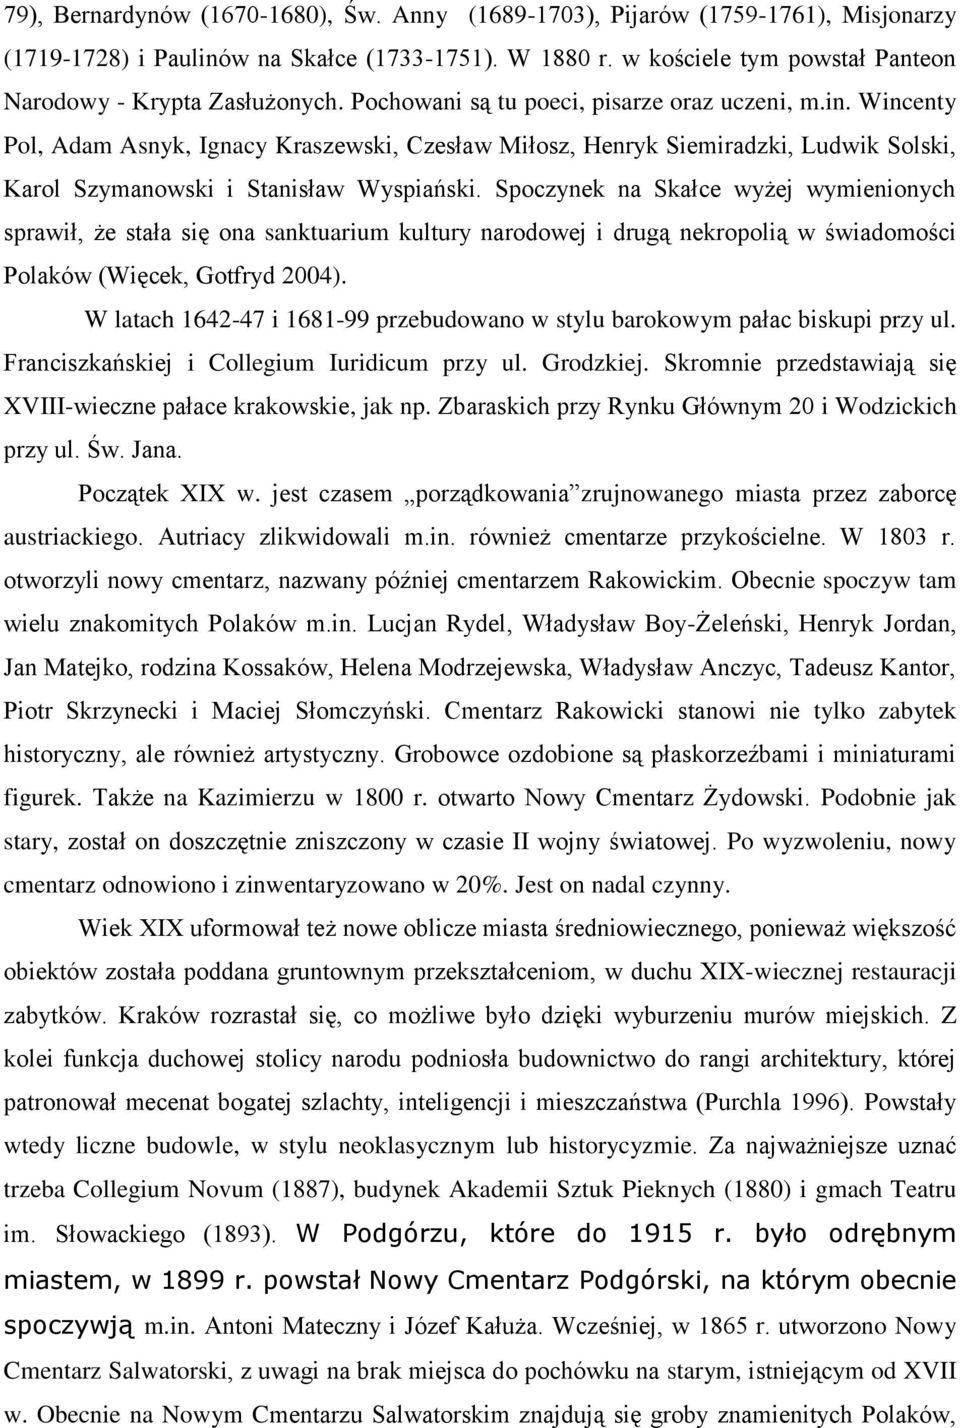 Wincenty Pol, Adam Asnyk, Ignacy Kraszewski, Czesław Miłosz, Henryk Siemiradzki, Ludwik Solski, Karol Szymanowski i Stanisław Wyspiański.